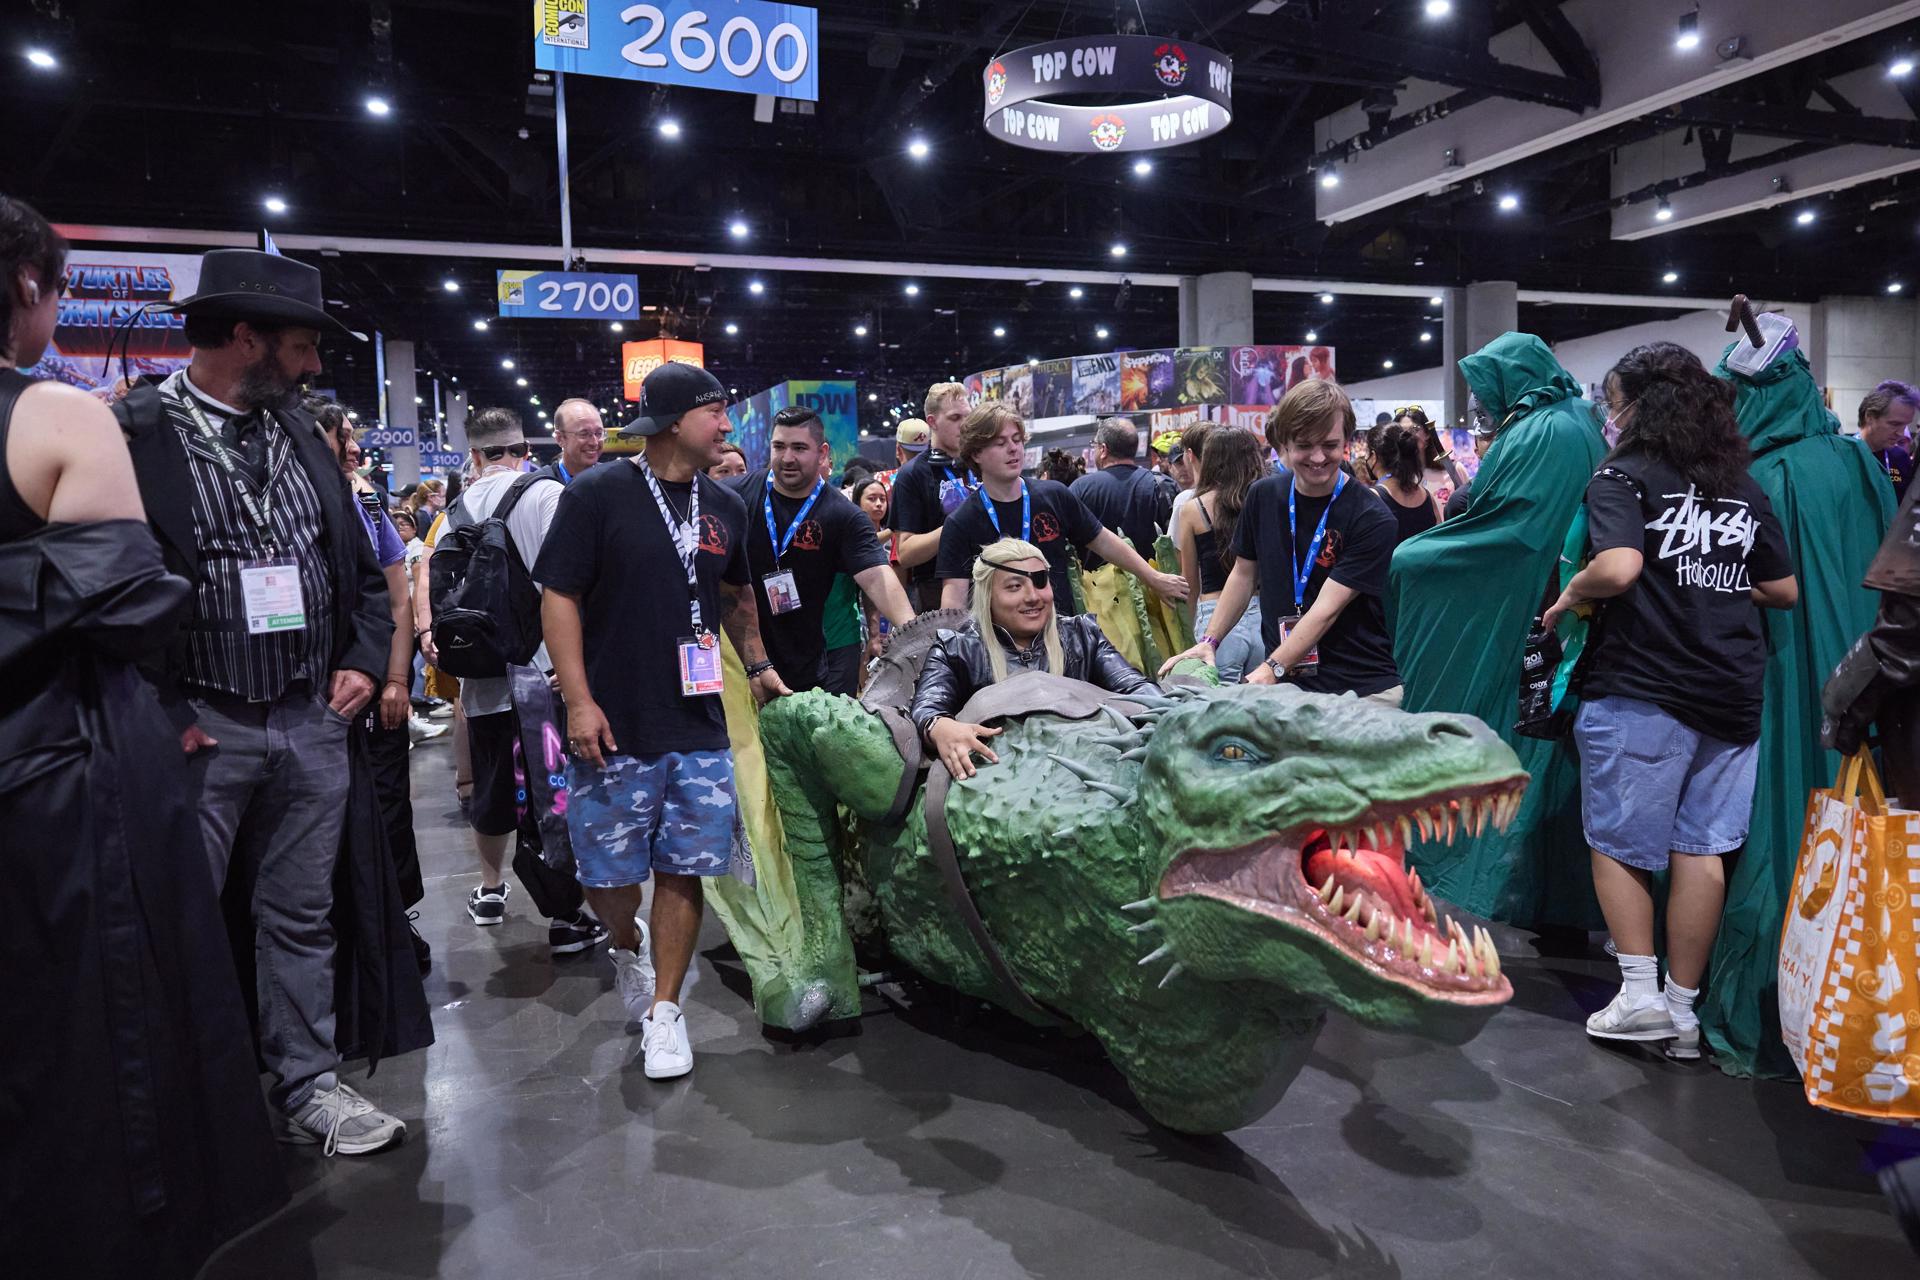 Una persona en cosplay durante Comic-Con International este viernes en San Diego, California, EE.UU. EFE/EPA/ALLISON DINNER